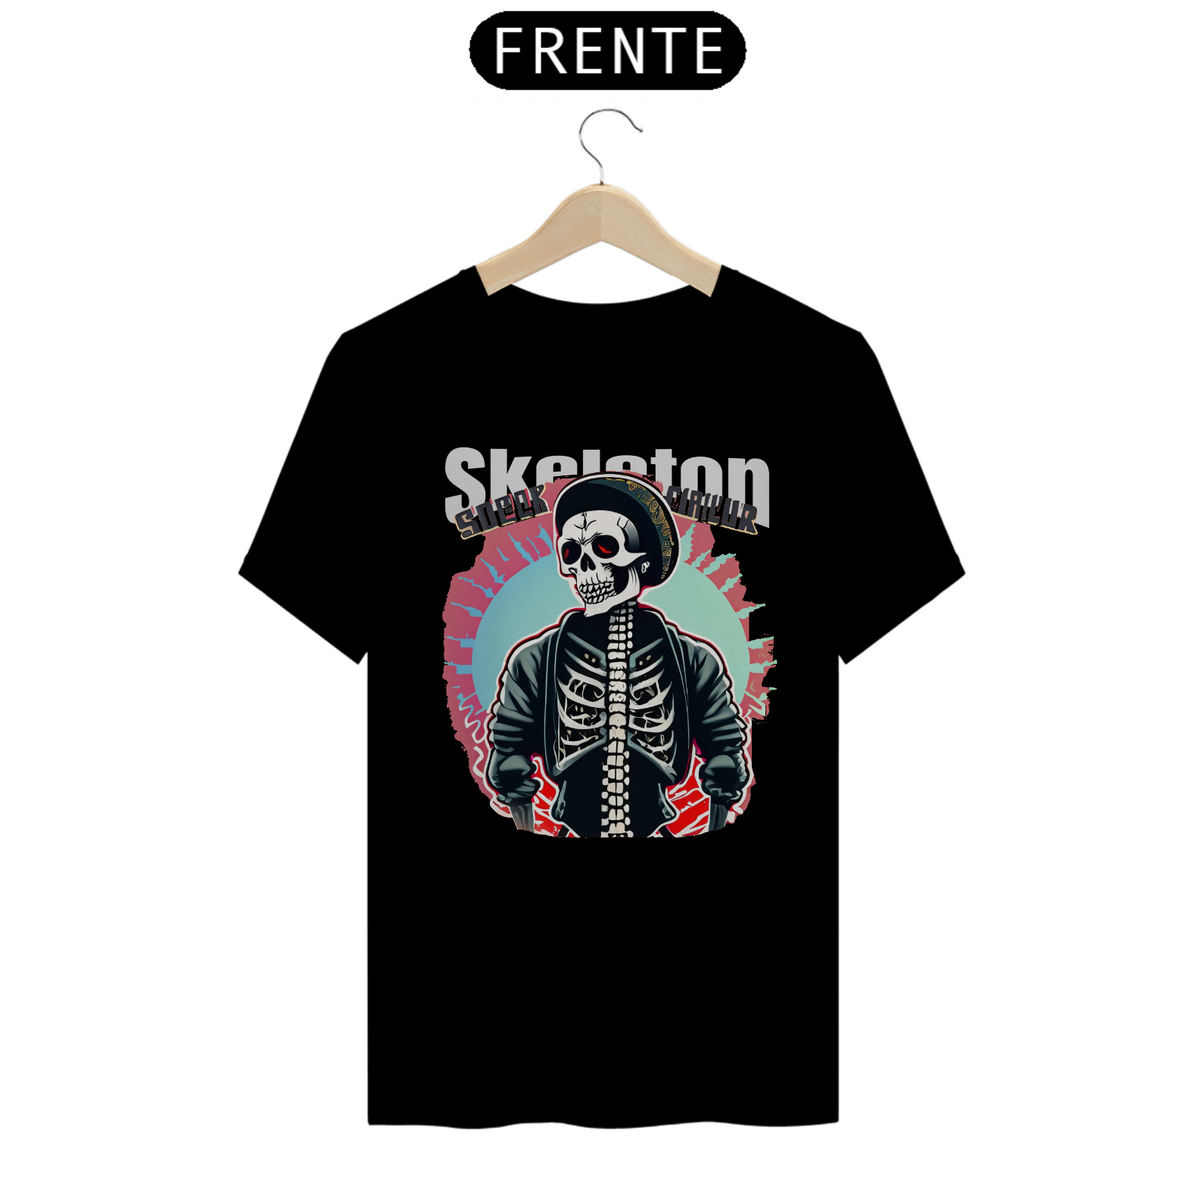 Nome do produto: T-shirt skeleton 